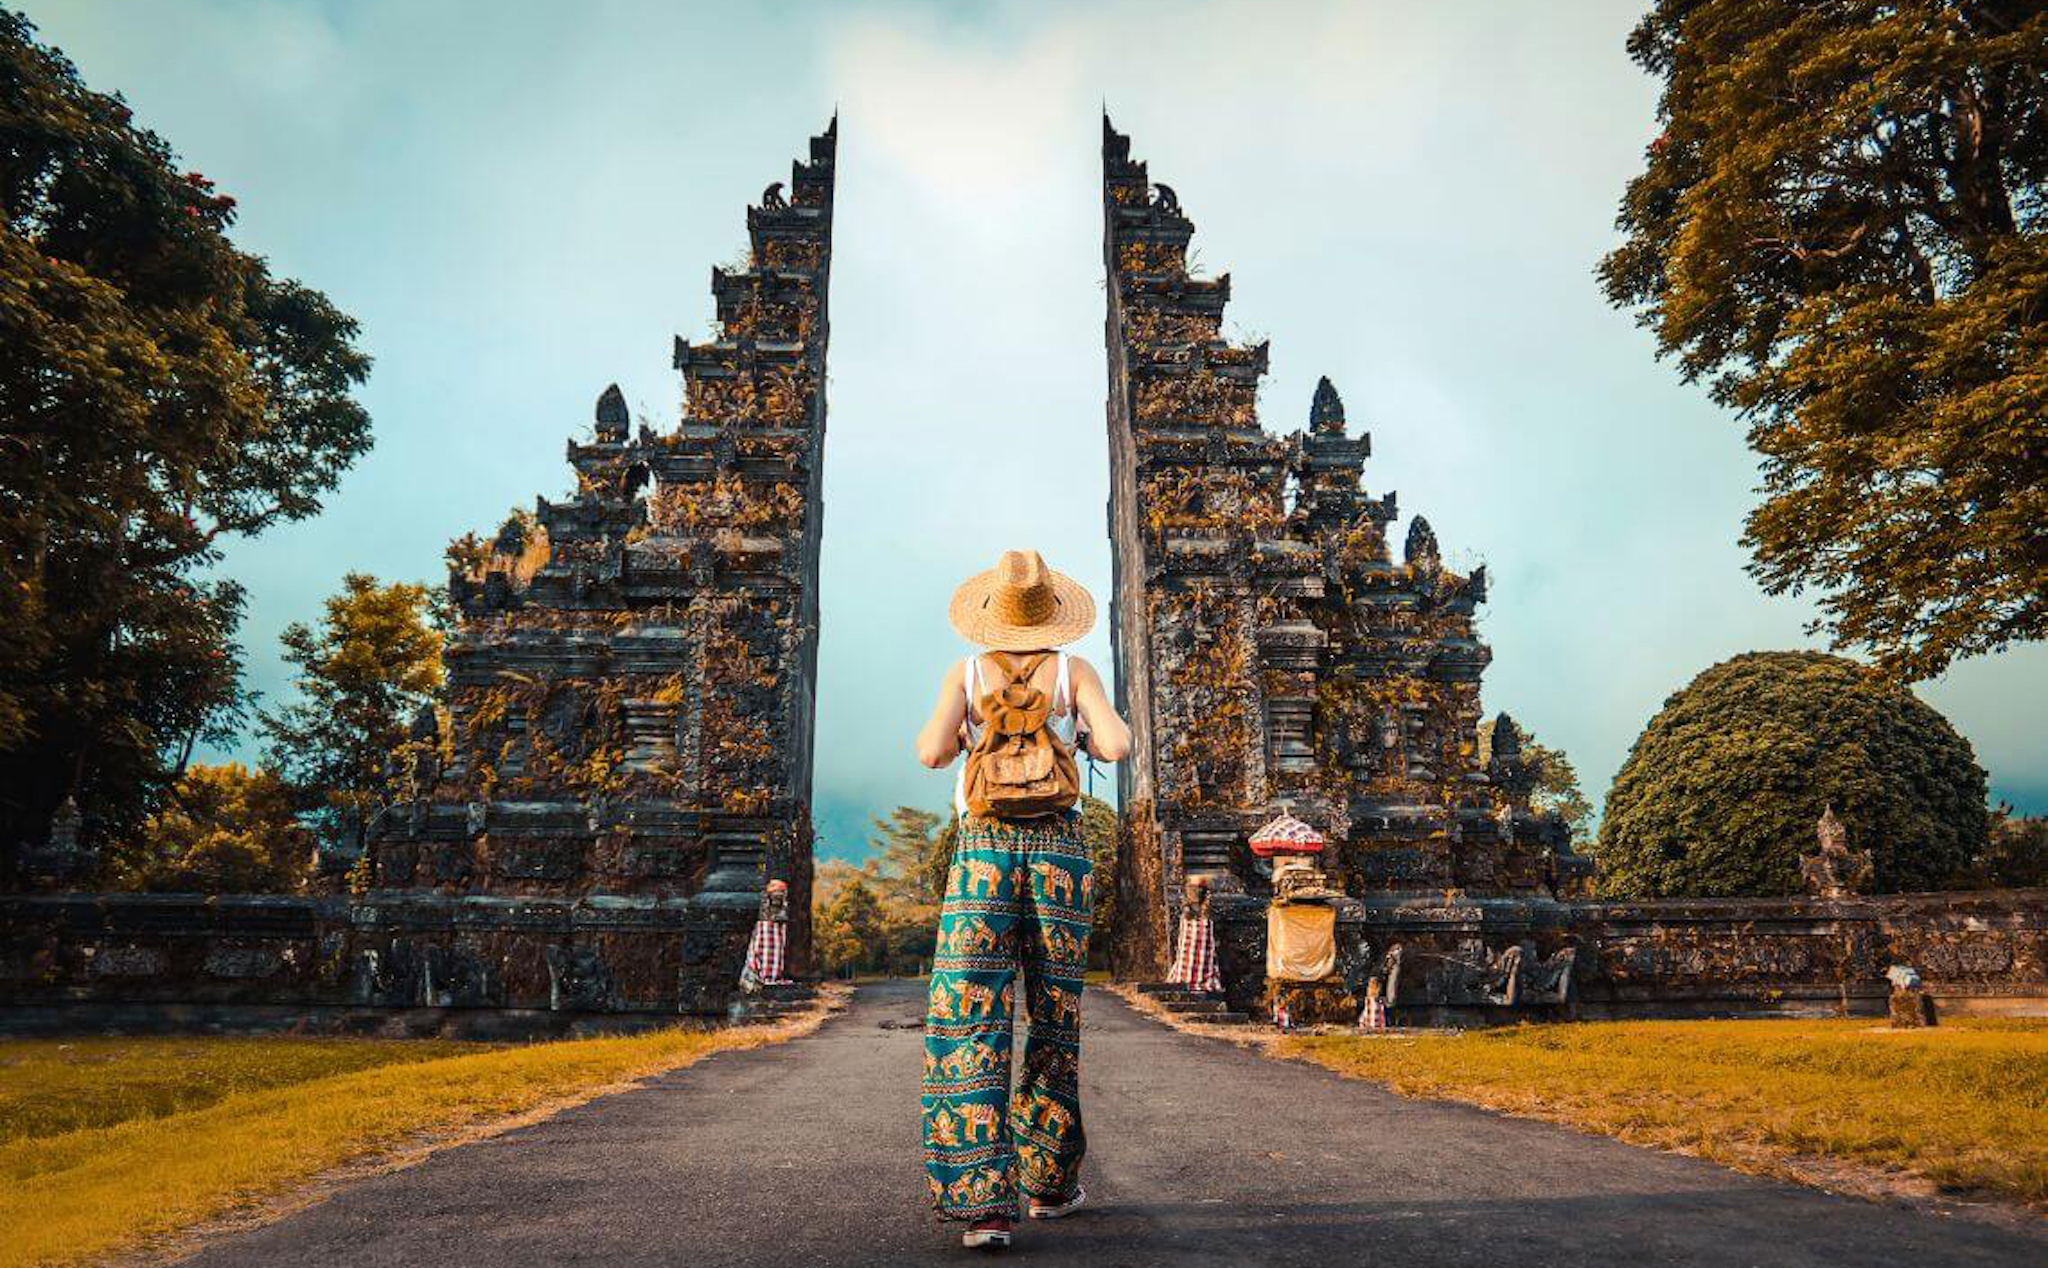 Trước tình trạng cư xử không chuẩn mực, Bali công bố 20 điều mà du khách cần tuân thủ